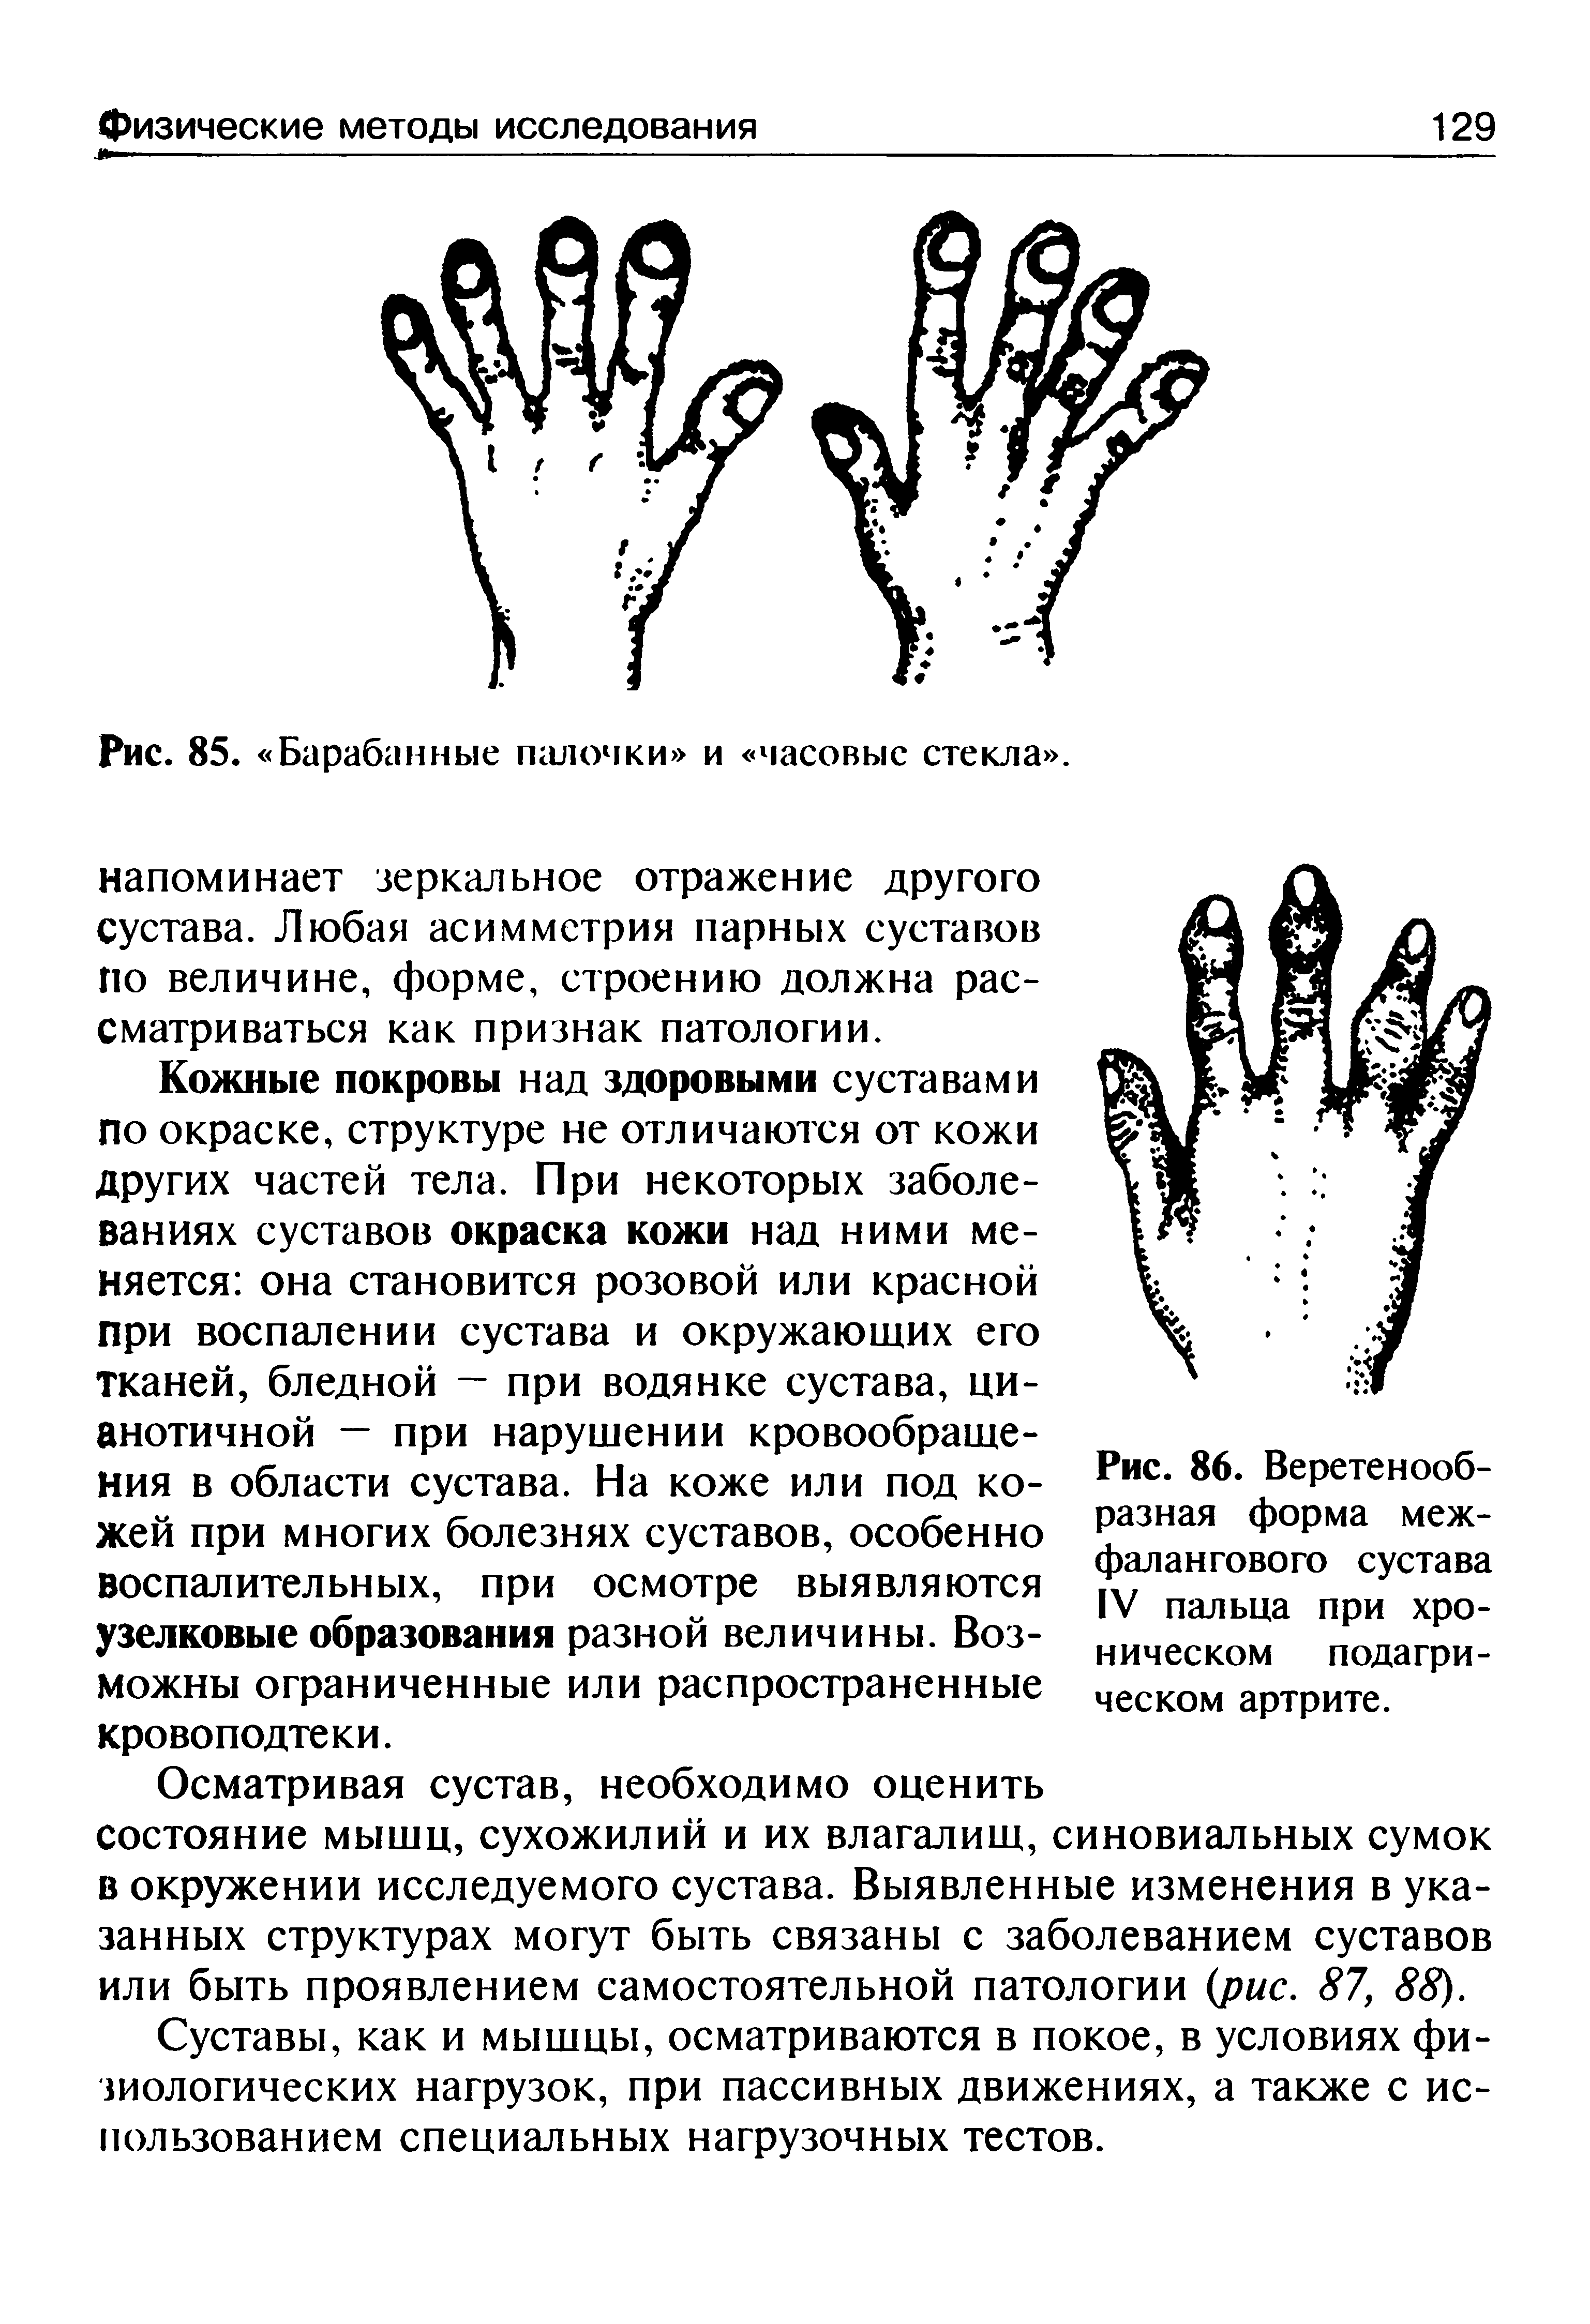 Рис. 86. Веретенообразная форма межфалангового сустава IV пальца при хроническом подагрическом артрите.